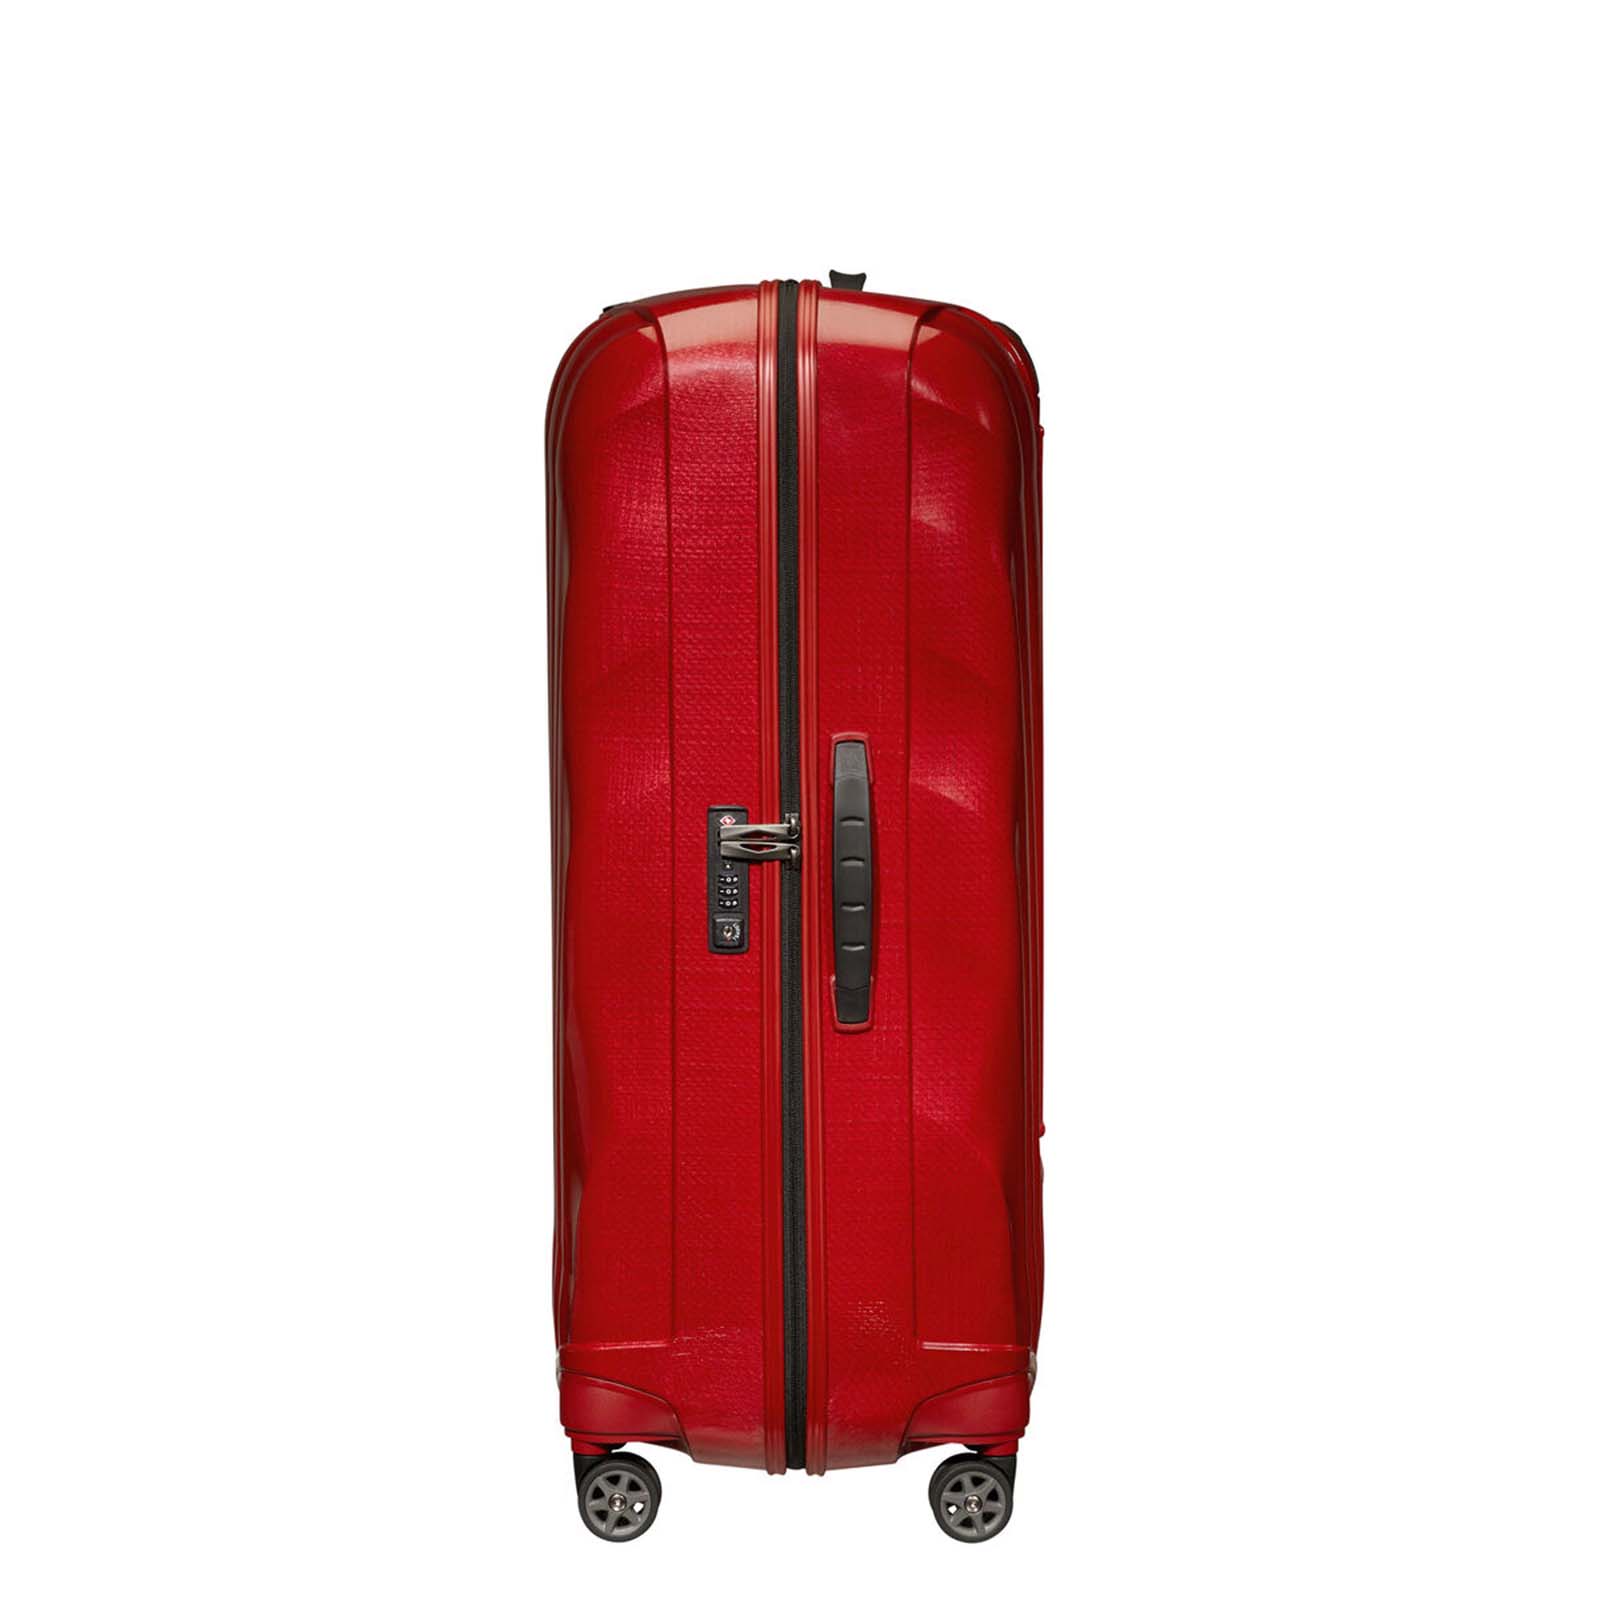 Samsonite-C-Lite-81cm-Suitcase-Chili-Red-Lock